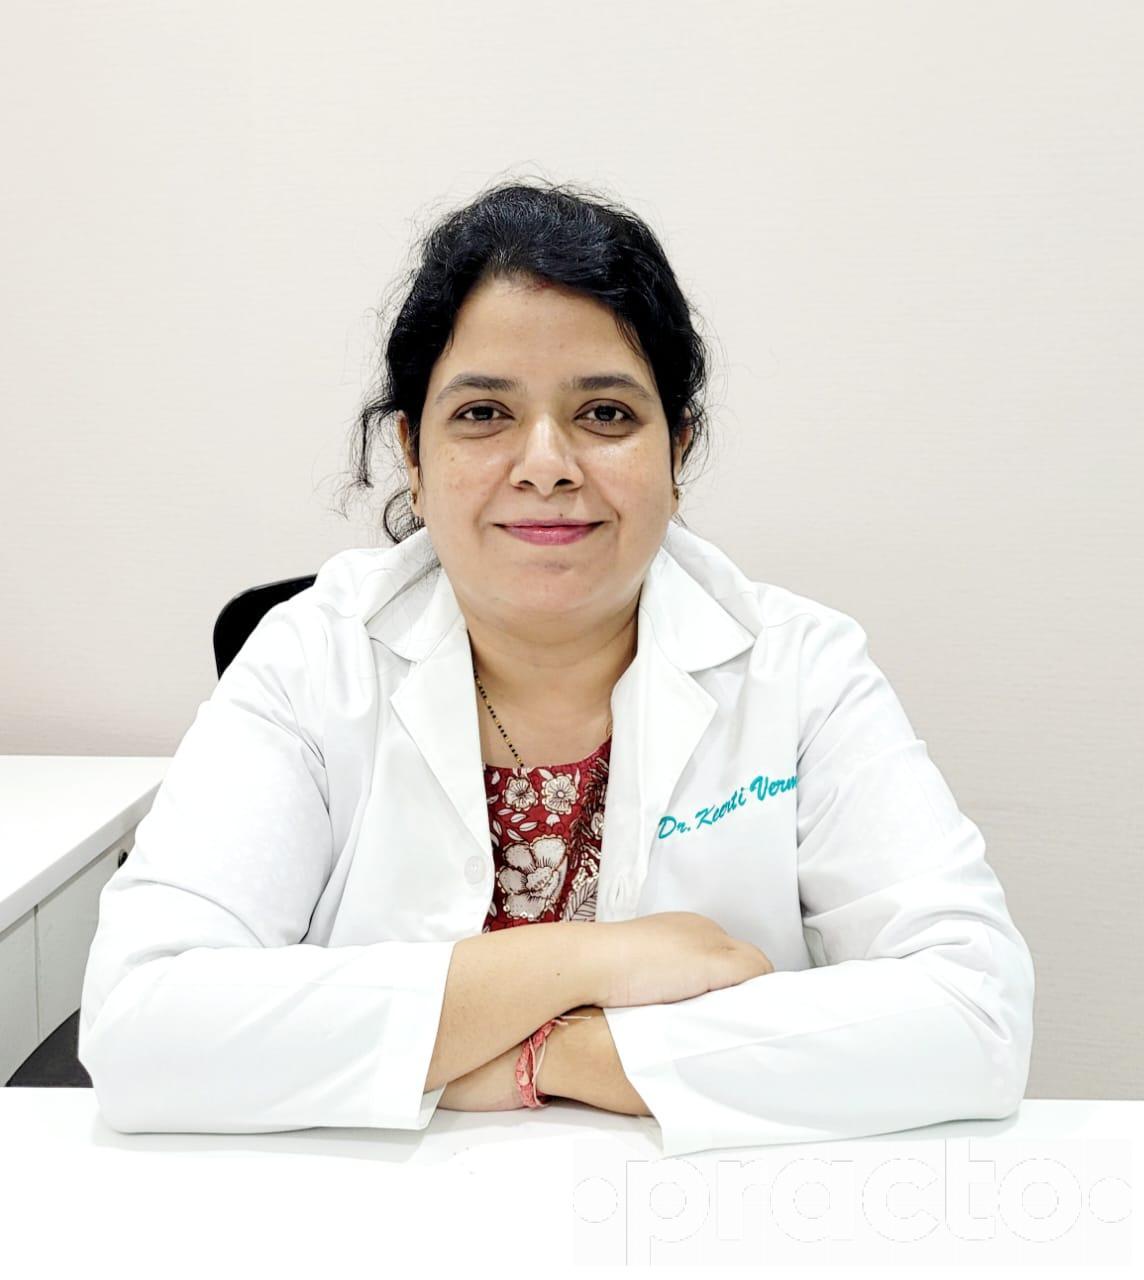 Dr. Keerti Verma